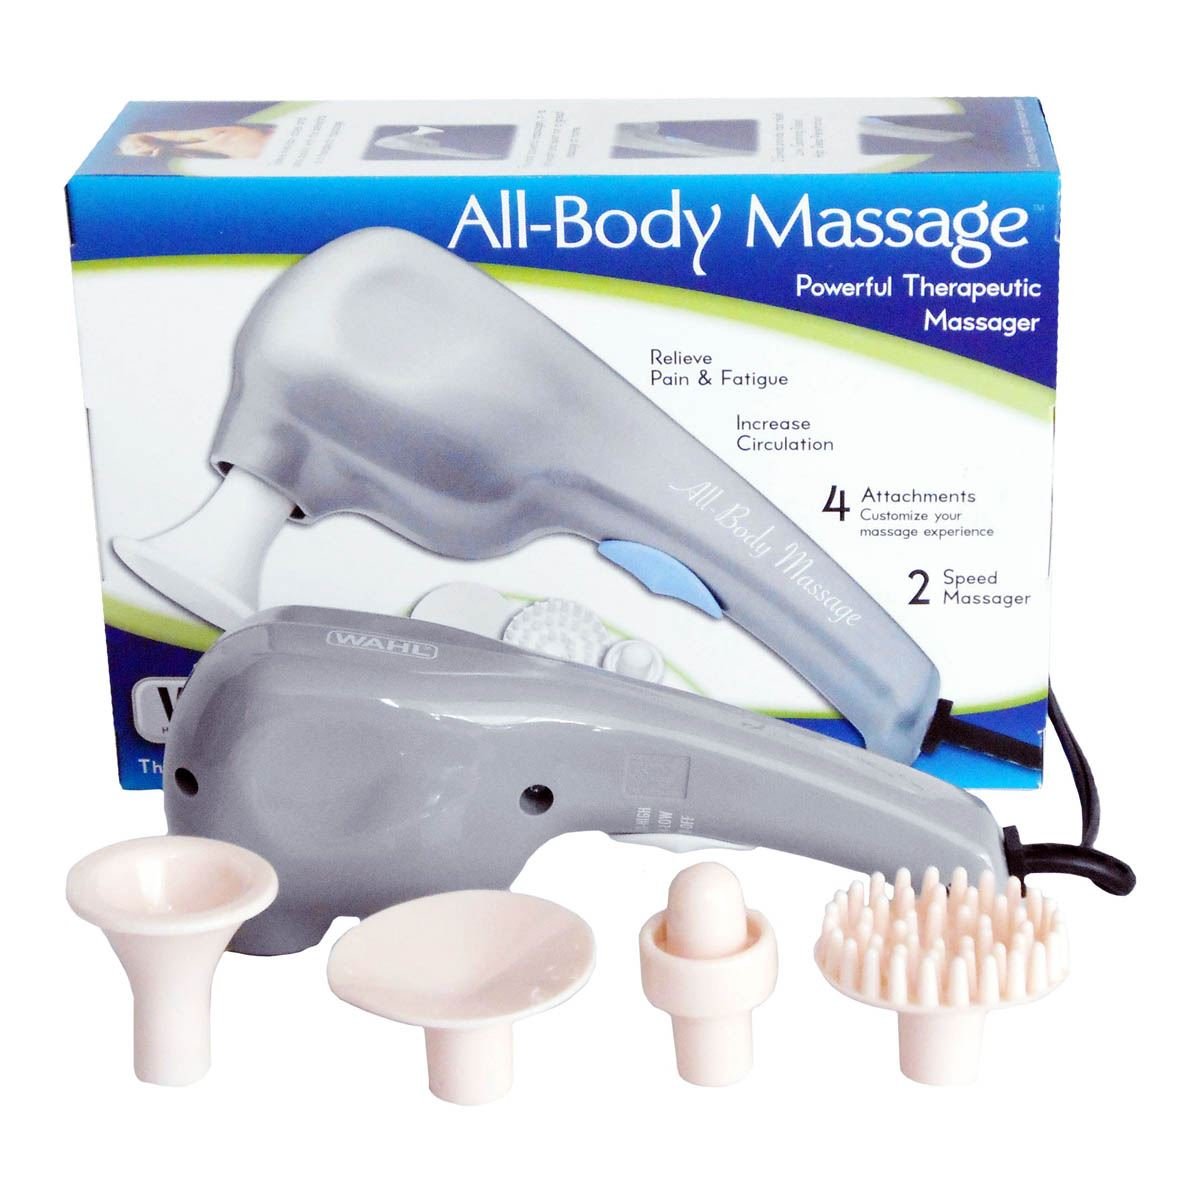 10 aparatos de masaje para quedarte como nuevo tras la vuelta a la rutina -  Showroom